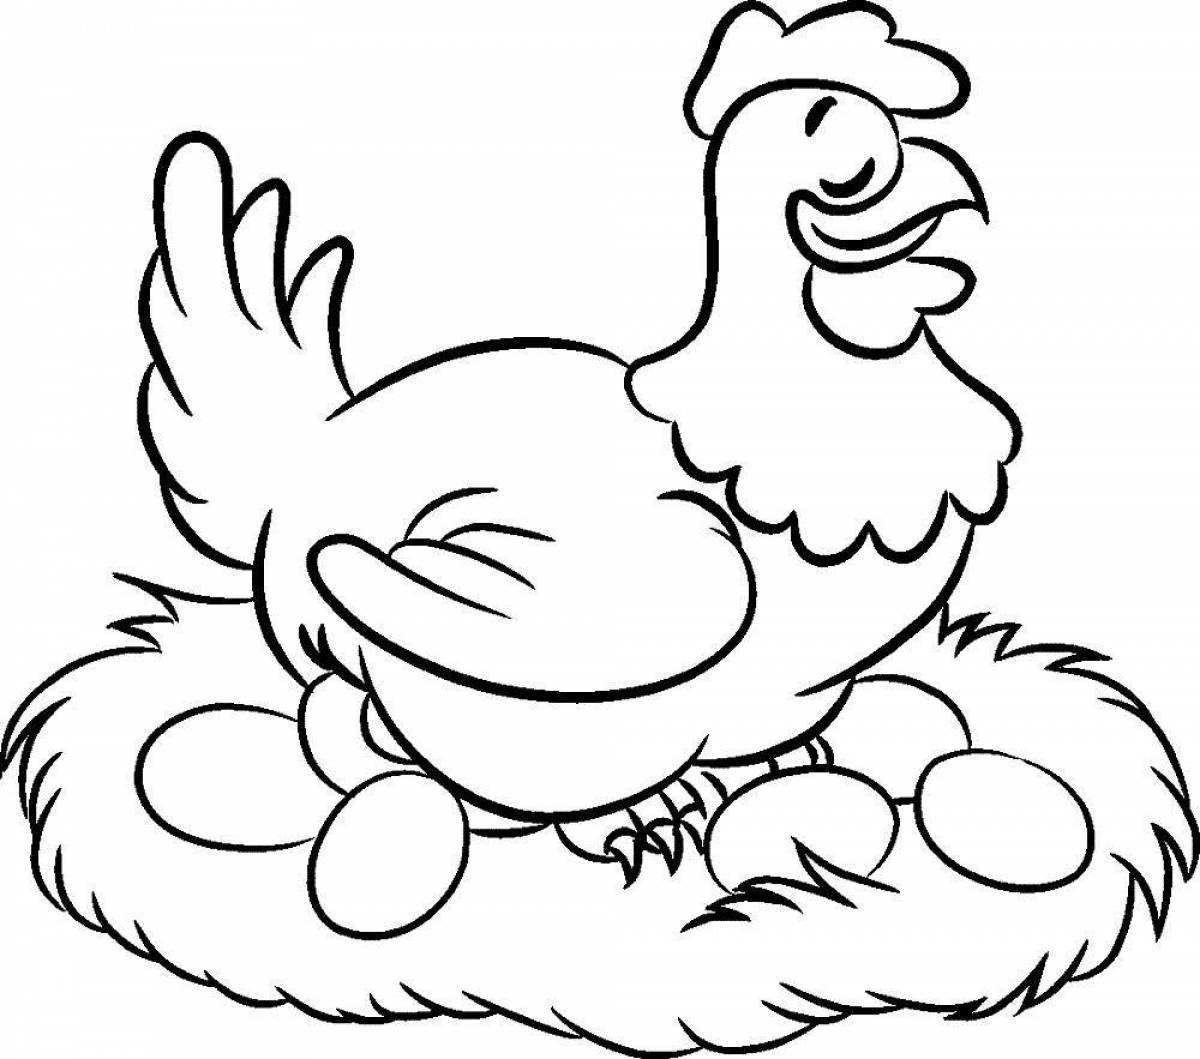 Веселая раскраска с цыпленком для дошкольников 2-3 лет